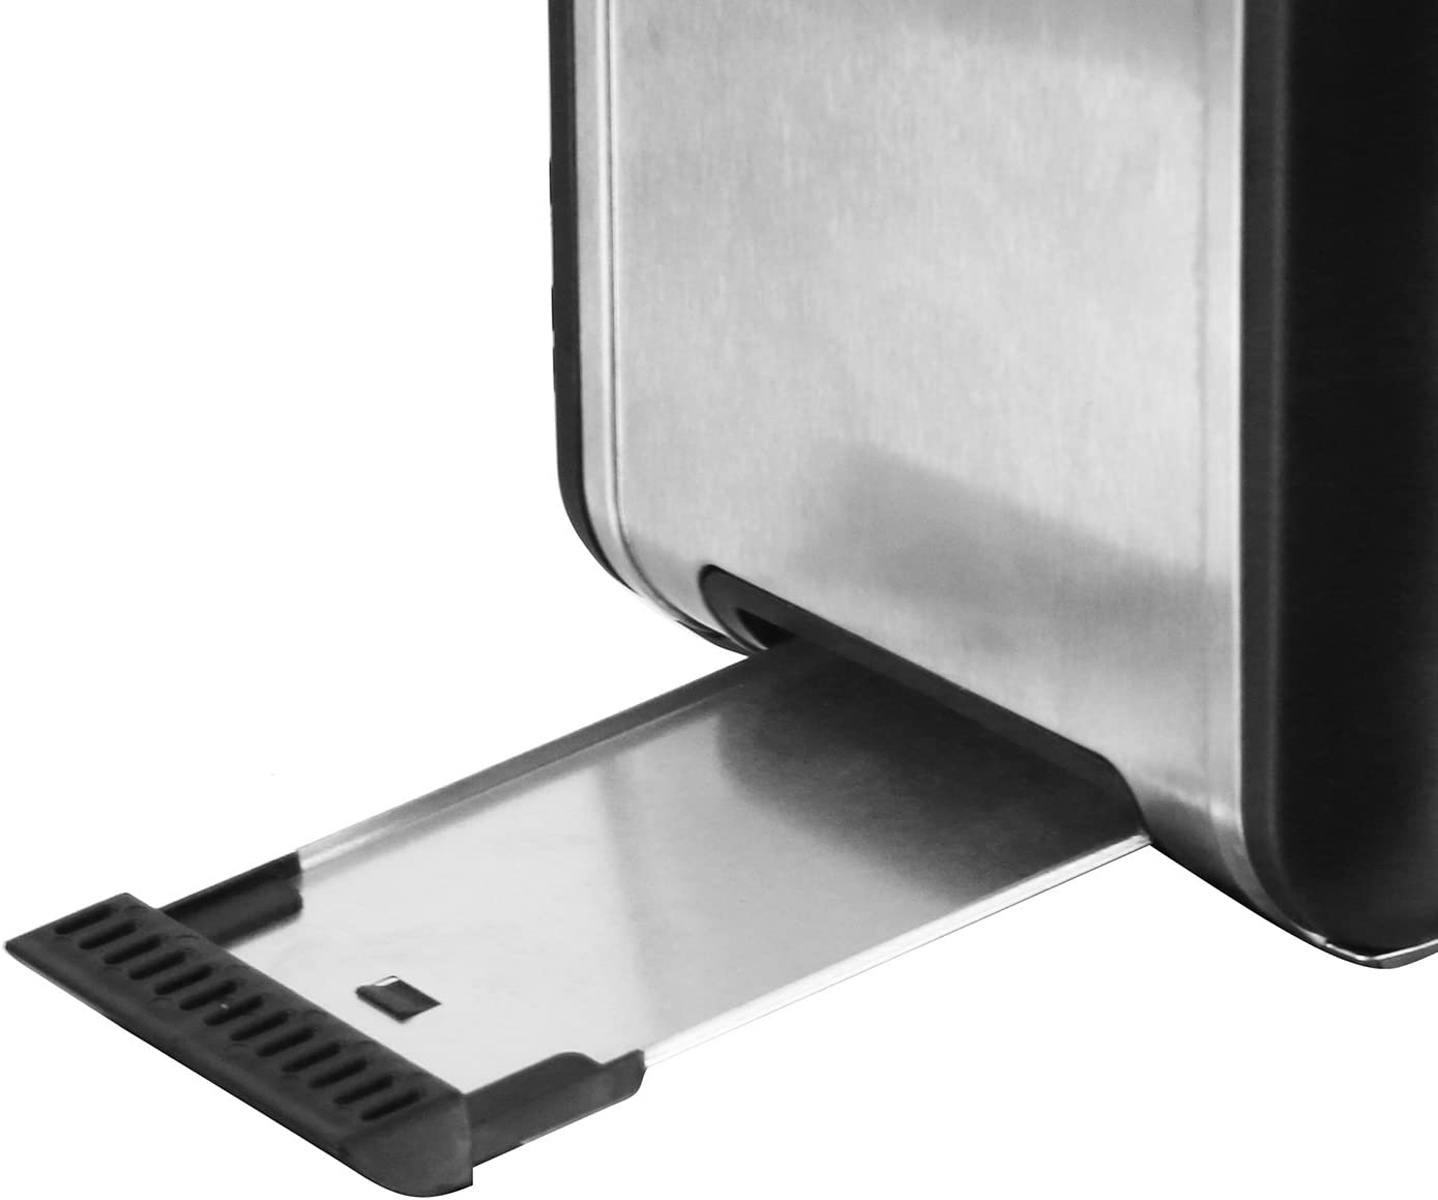 Schlitze: Toaster (800 TO-112826.1 Watt, Silber EMERIO 2)